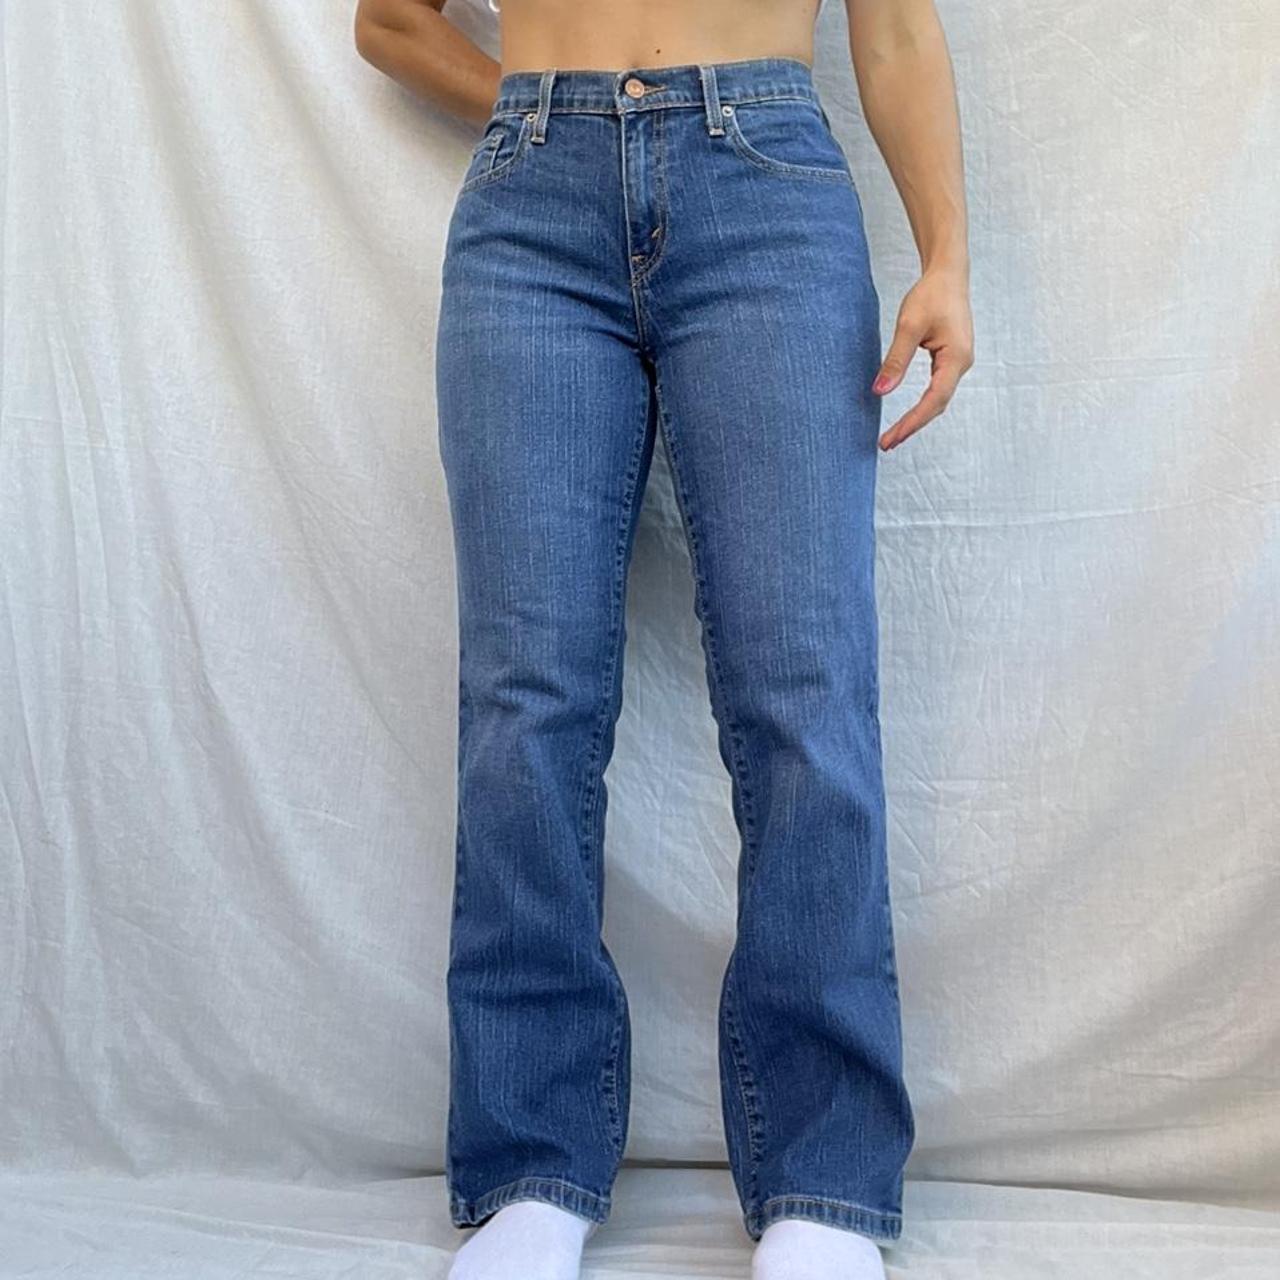 Levi’s denim jeans! - description - women’s 505... - Depop